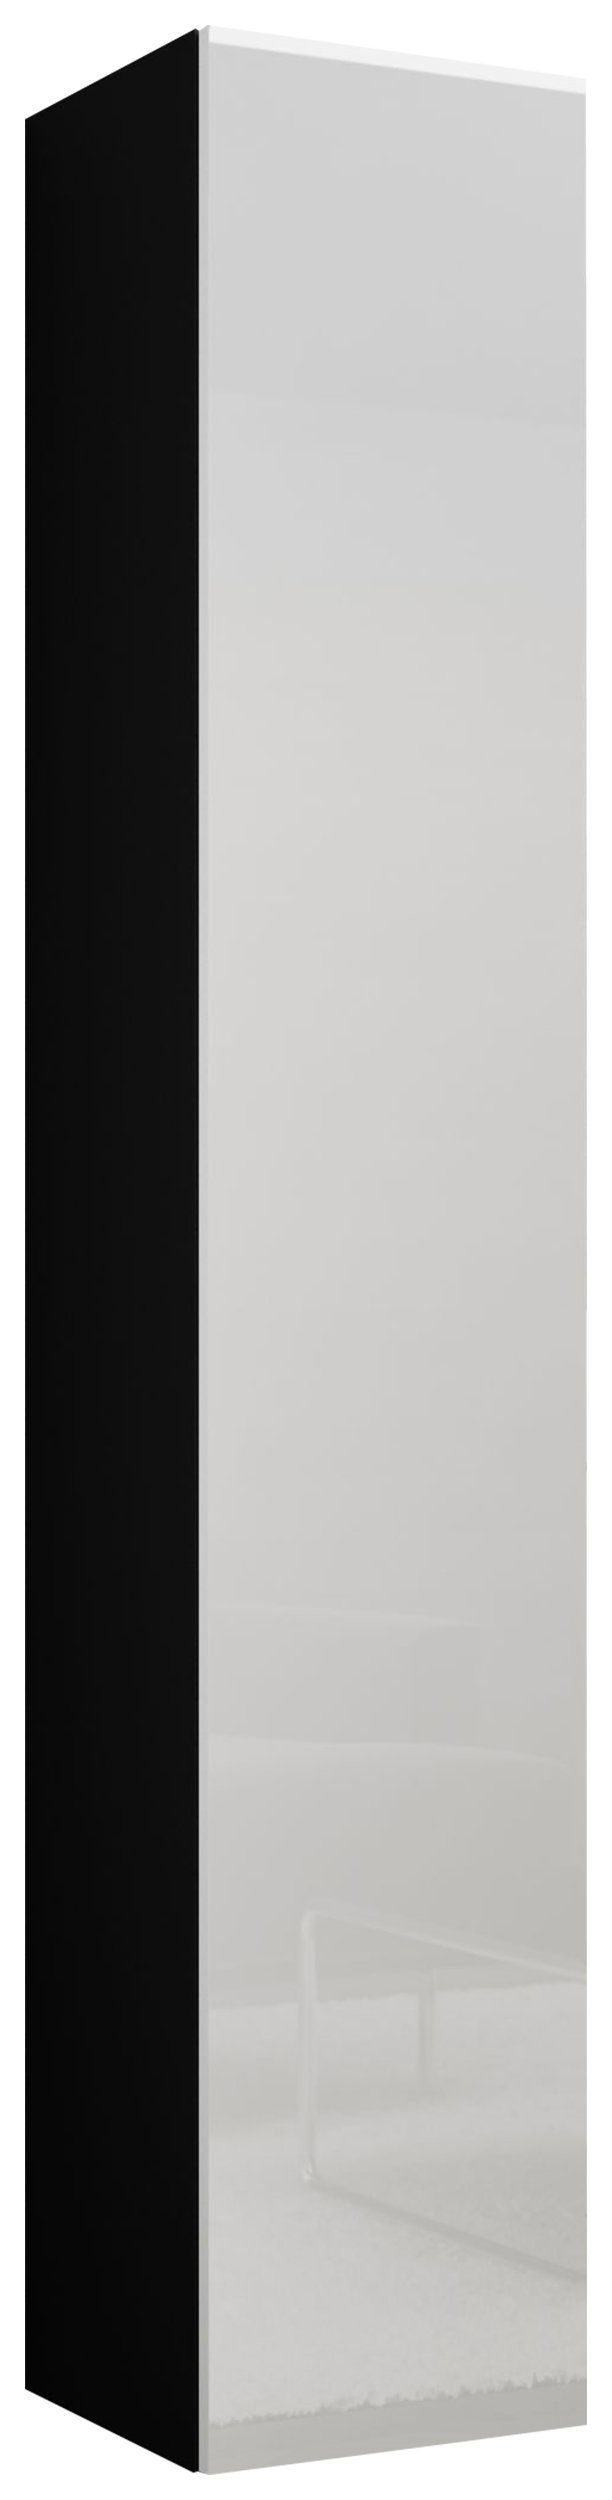 Stylefy Stauraumschrank Vago Full 180 cm (Wandschrank, Wandregal) viel Stauraum, mit Push-to-Open, Hochglanzfront, Modern Design Schwarz/Weiß